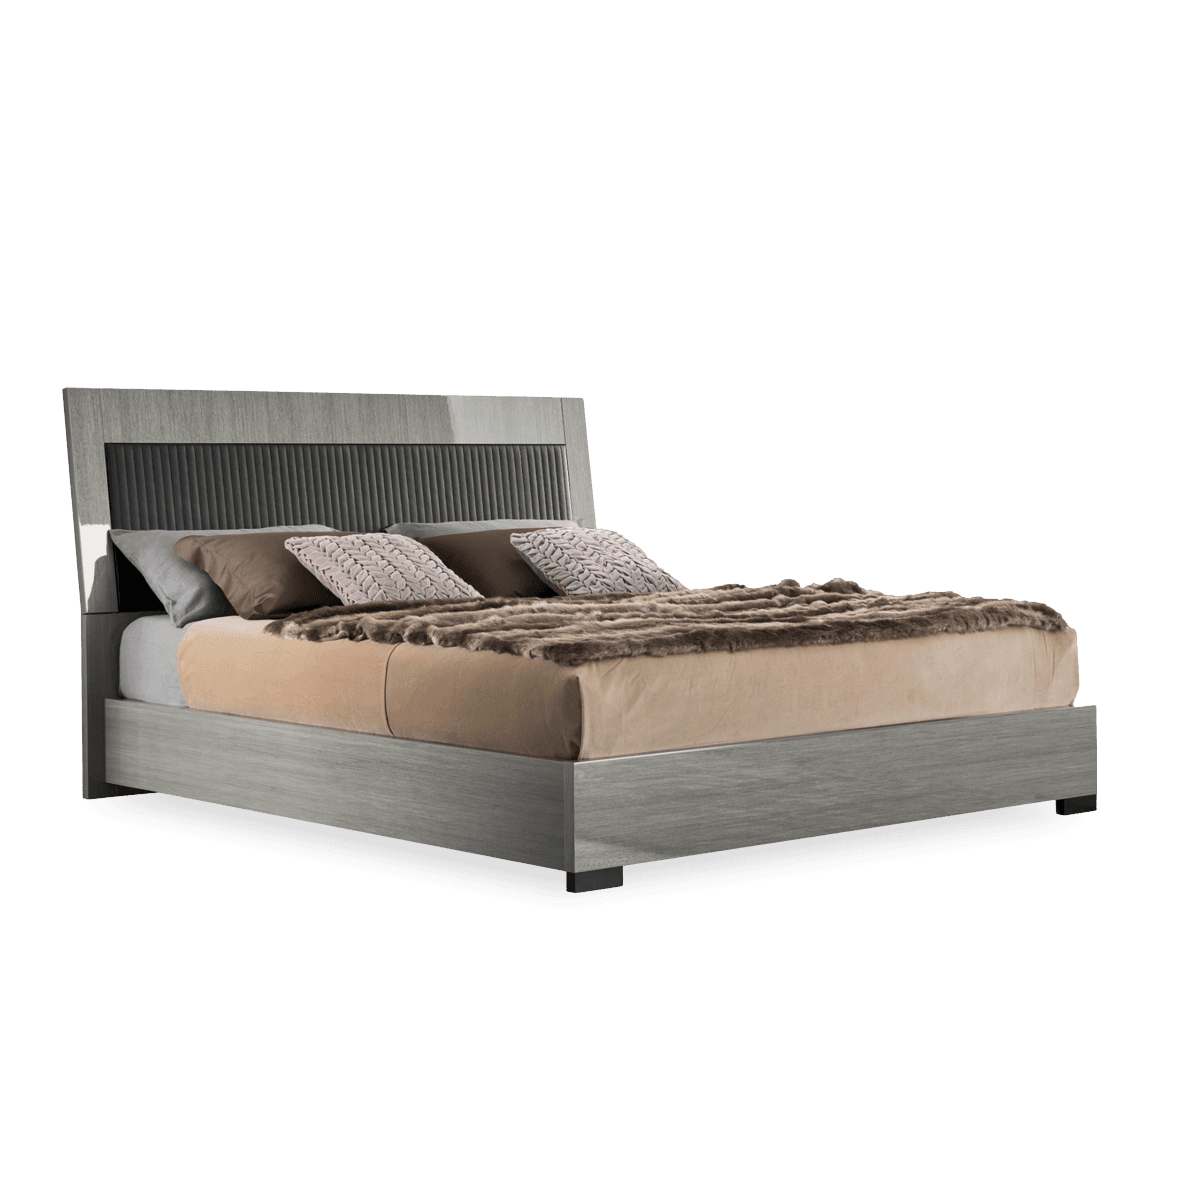 Novecento Ks Bed Upholstered - Silverwood